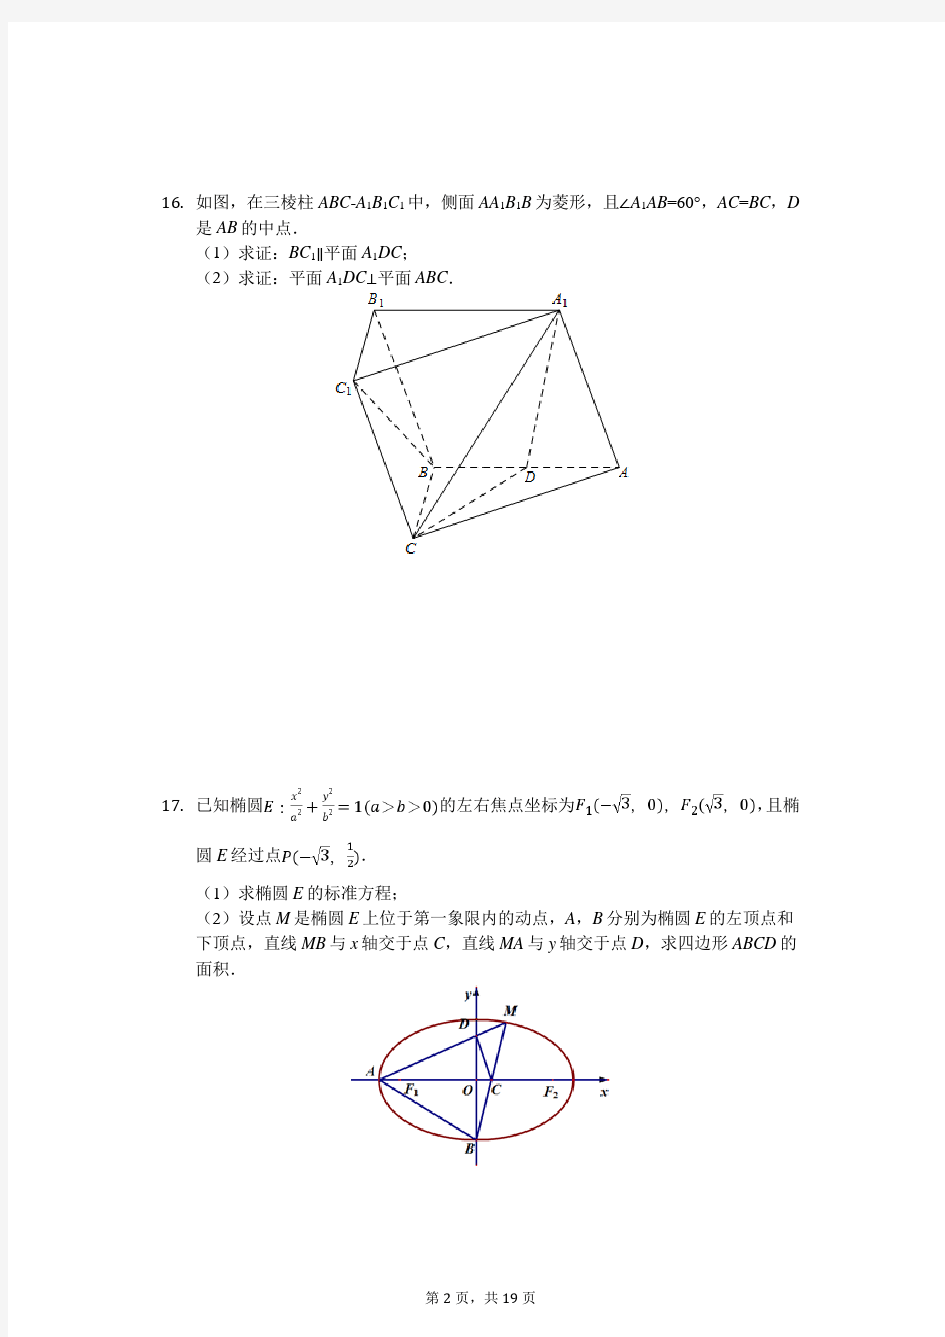 2020年江苏省南通市高考数学模拟试卷(二)(4月份)(有答案解析)